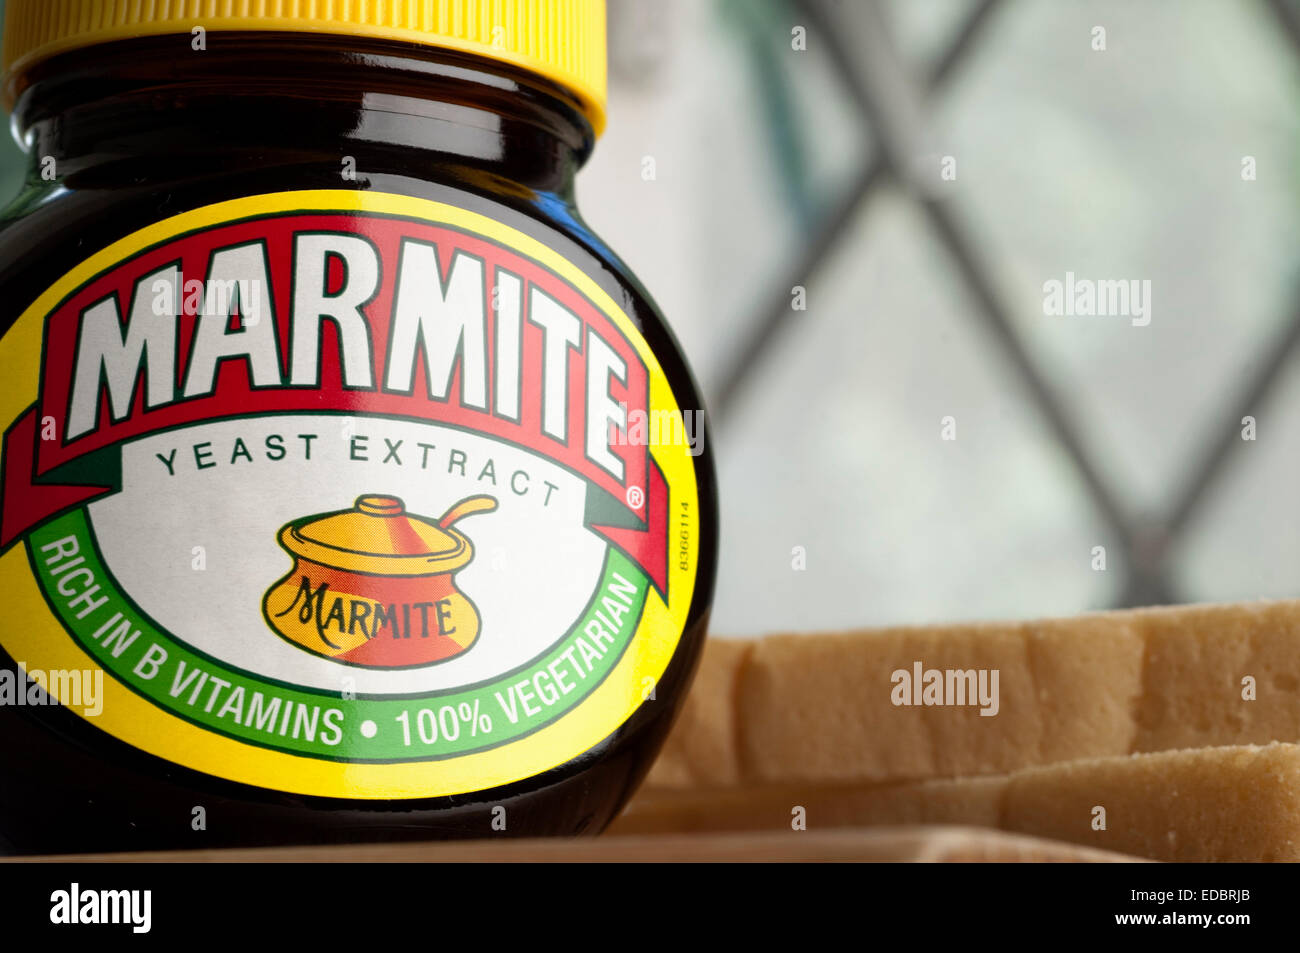 Image d'illustration de marmite, un produit alimentaire Unilever. Banque D'Images